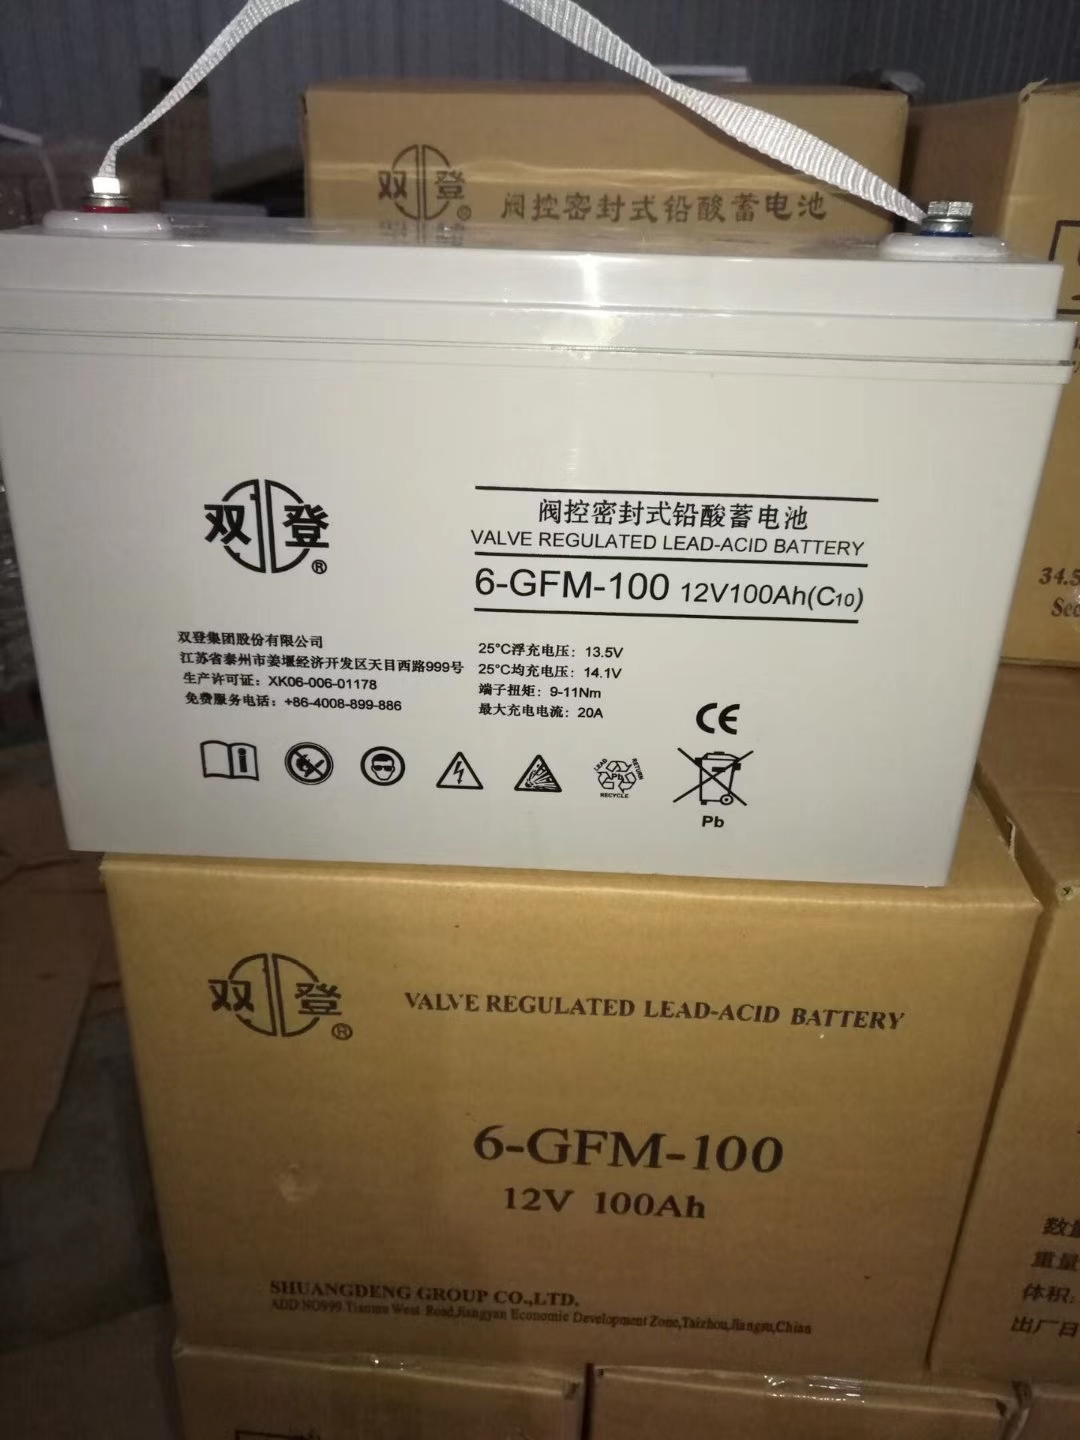 双登6-GFM-100 12V100ah蓄电池参数